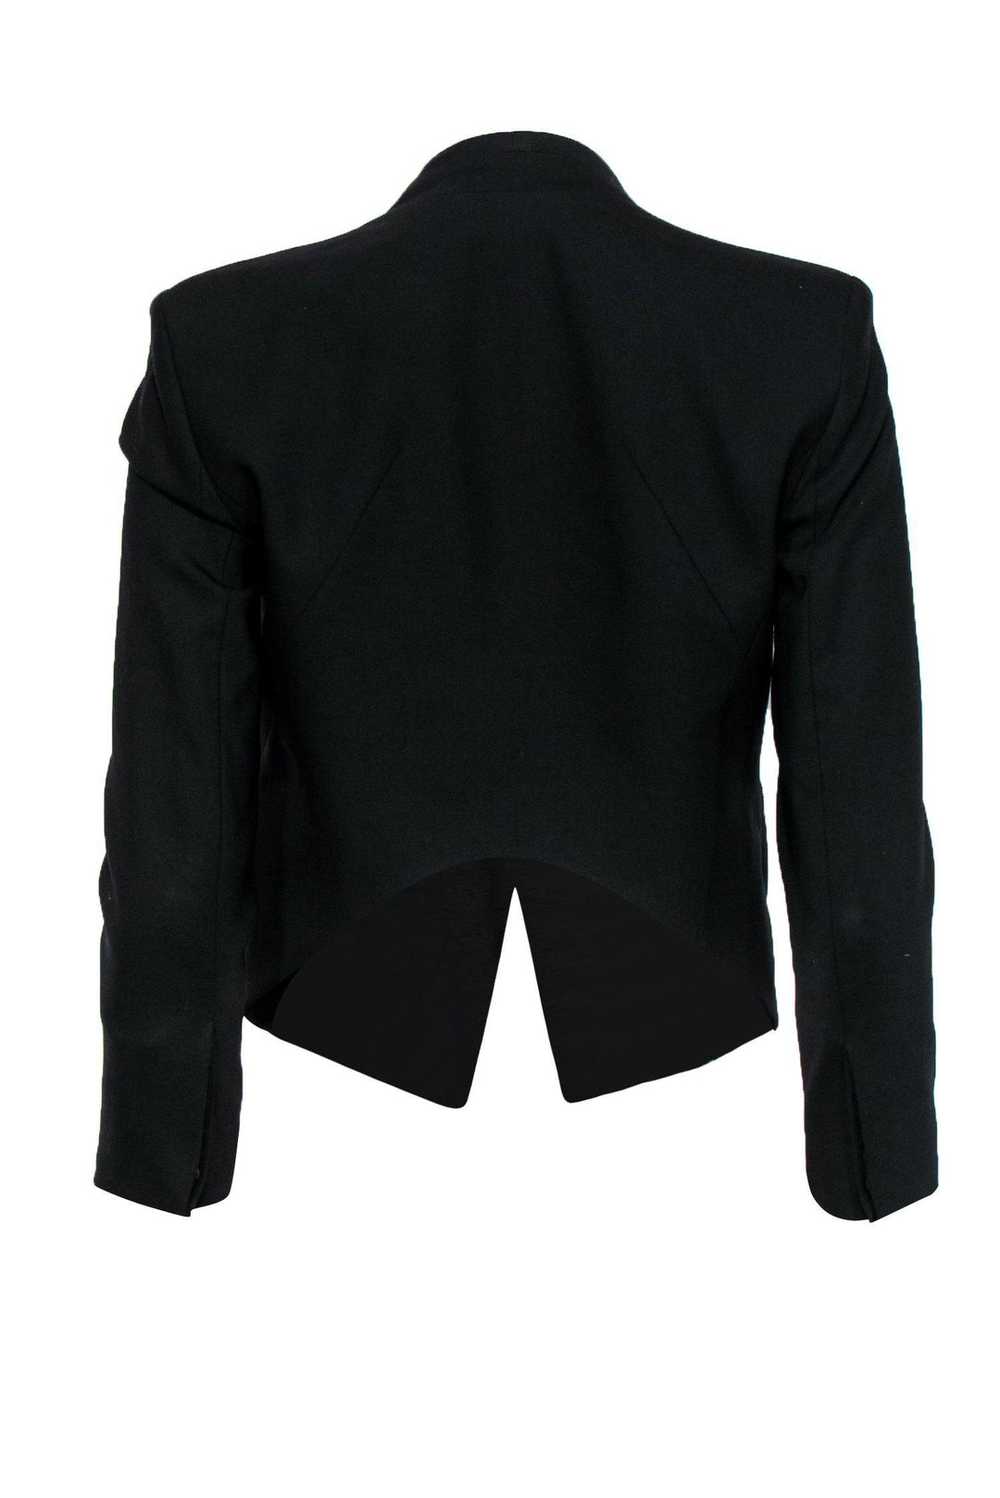 Helmut Lang - Black Wool Collarless Blazer Sz 0 - image 3